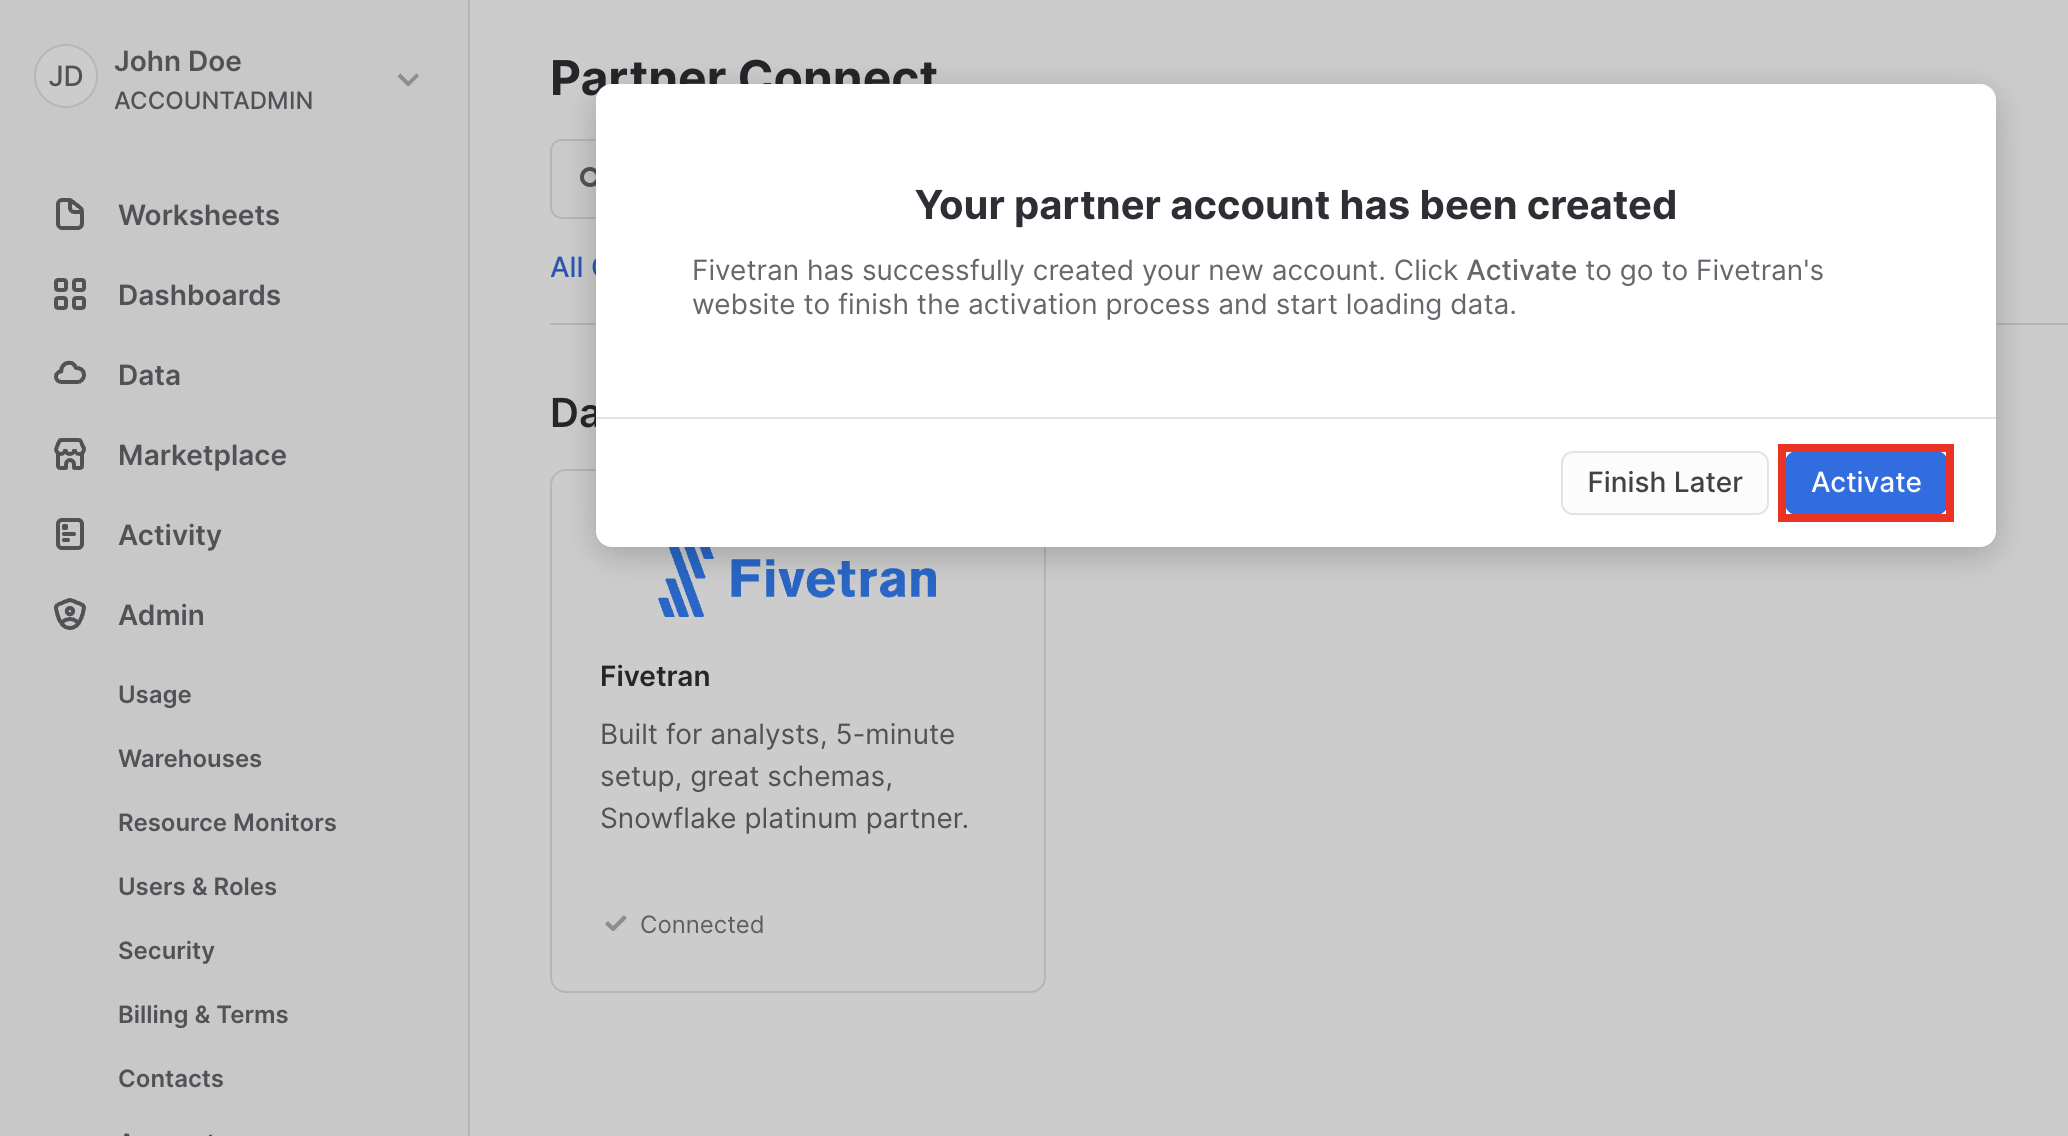 Activate Fivetran partner account